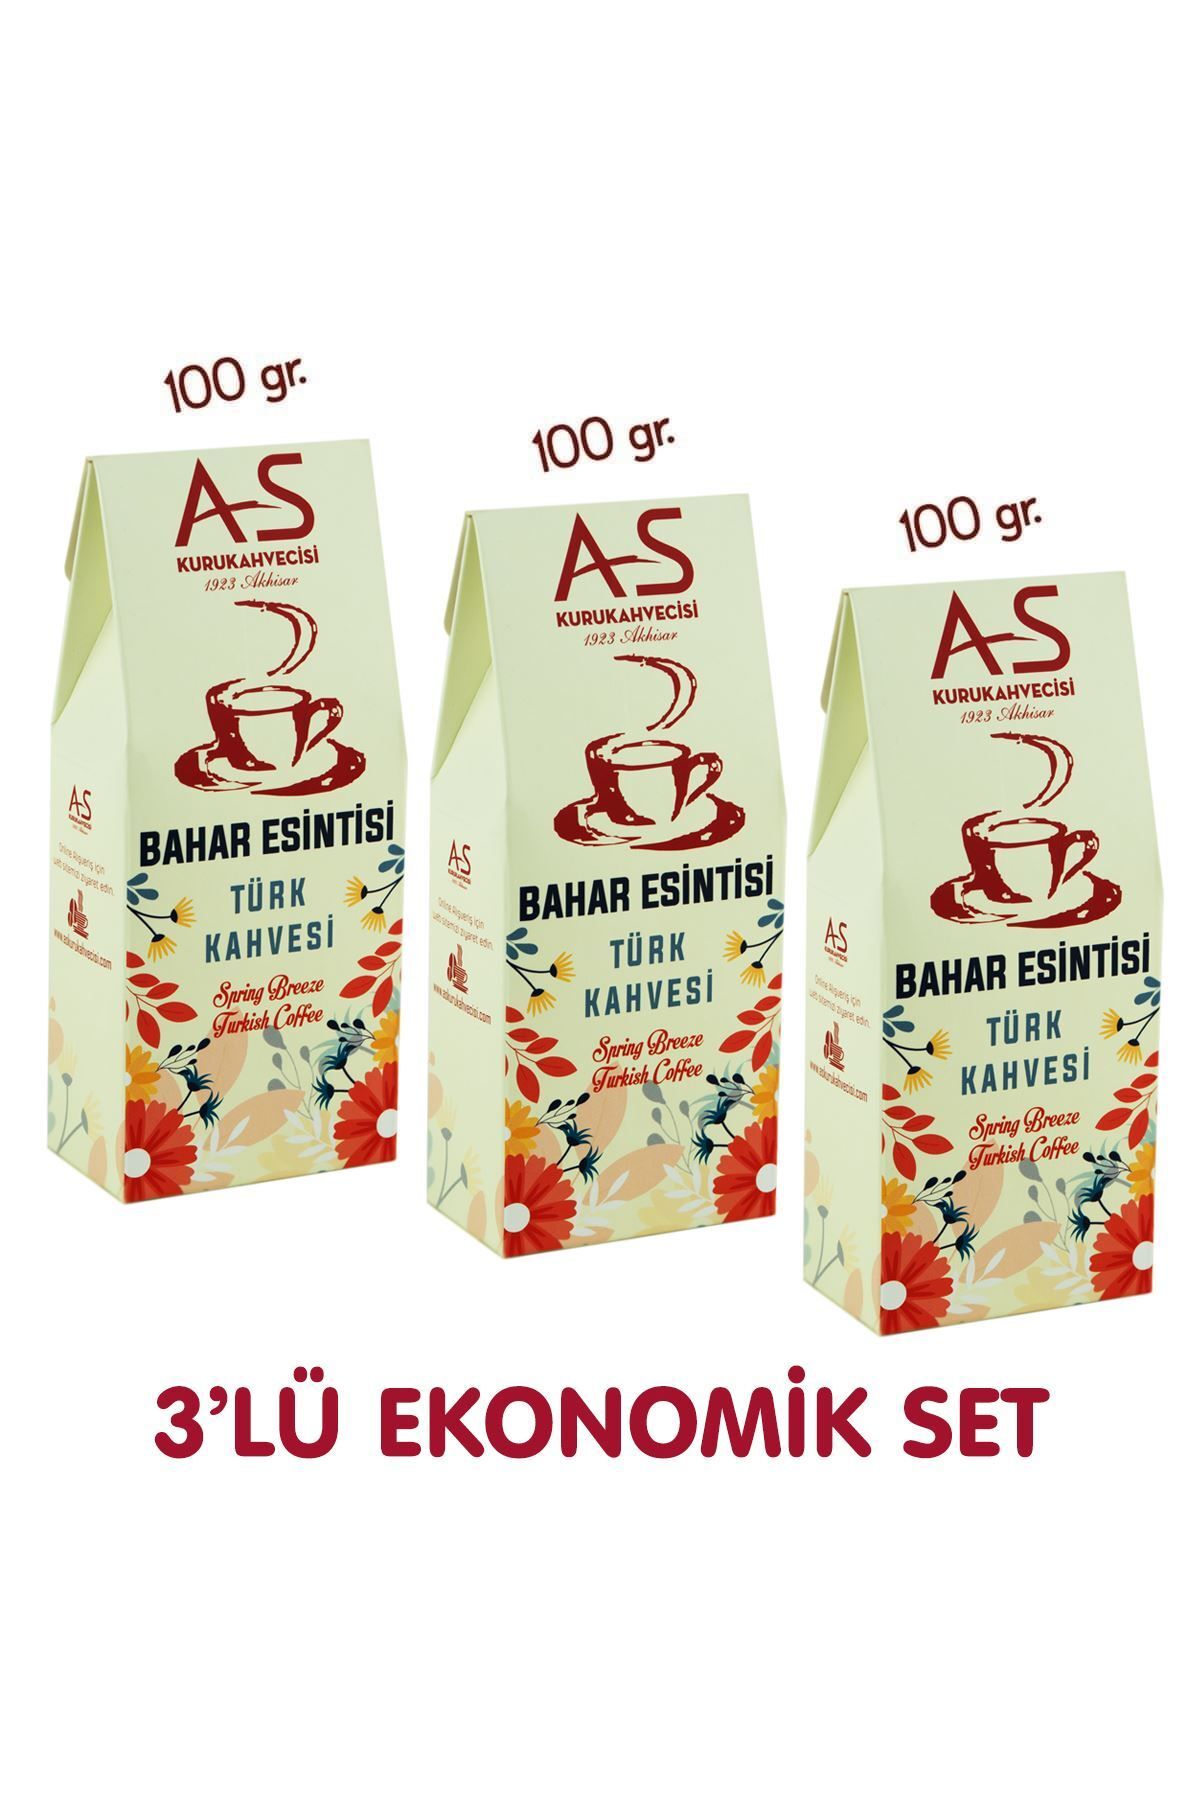 AS Kurukahvecisi 3'lü Bahar Esintisi Türk Kahvesi Ekonomik Set